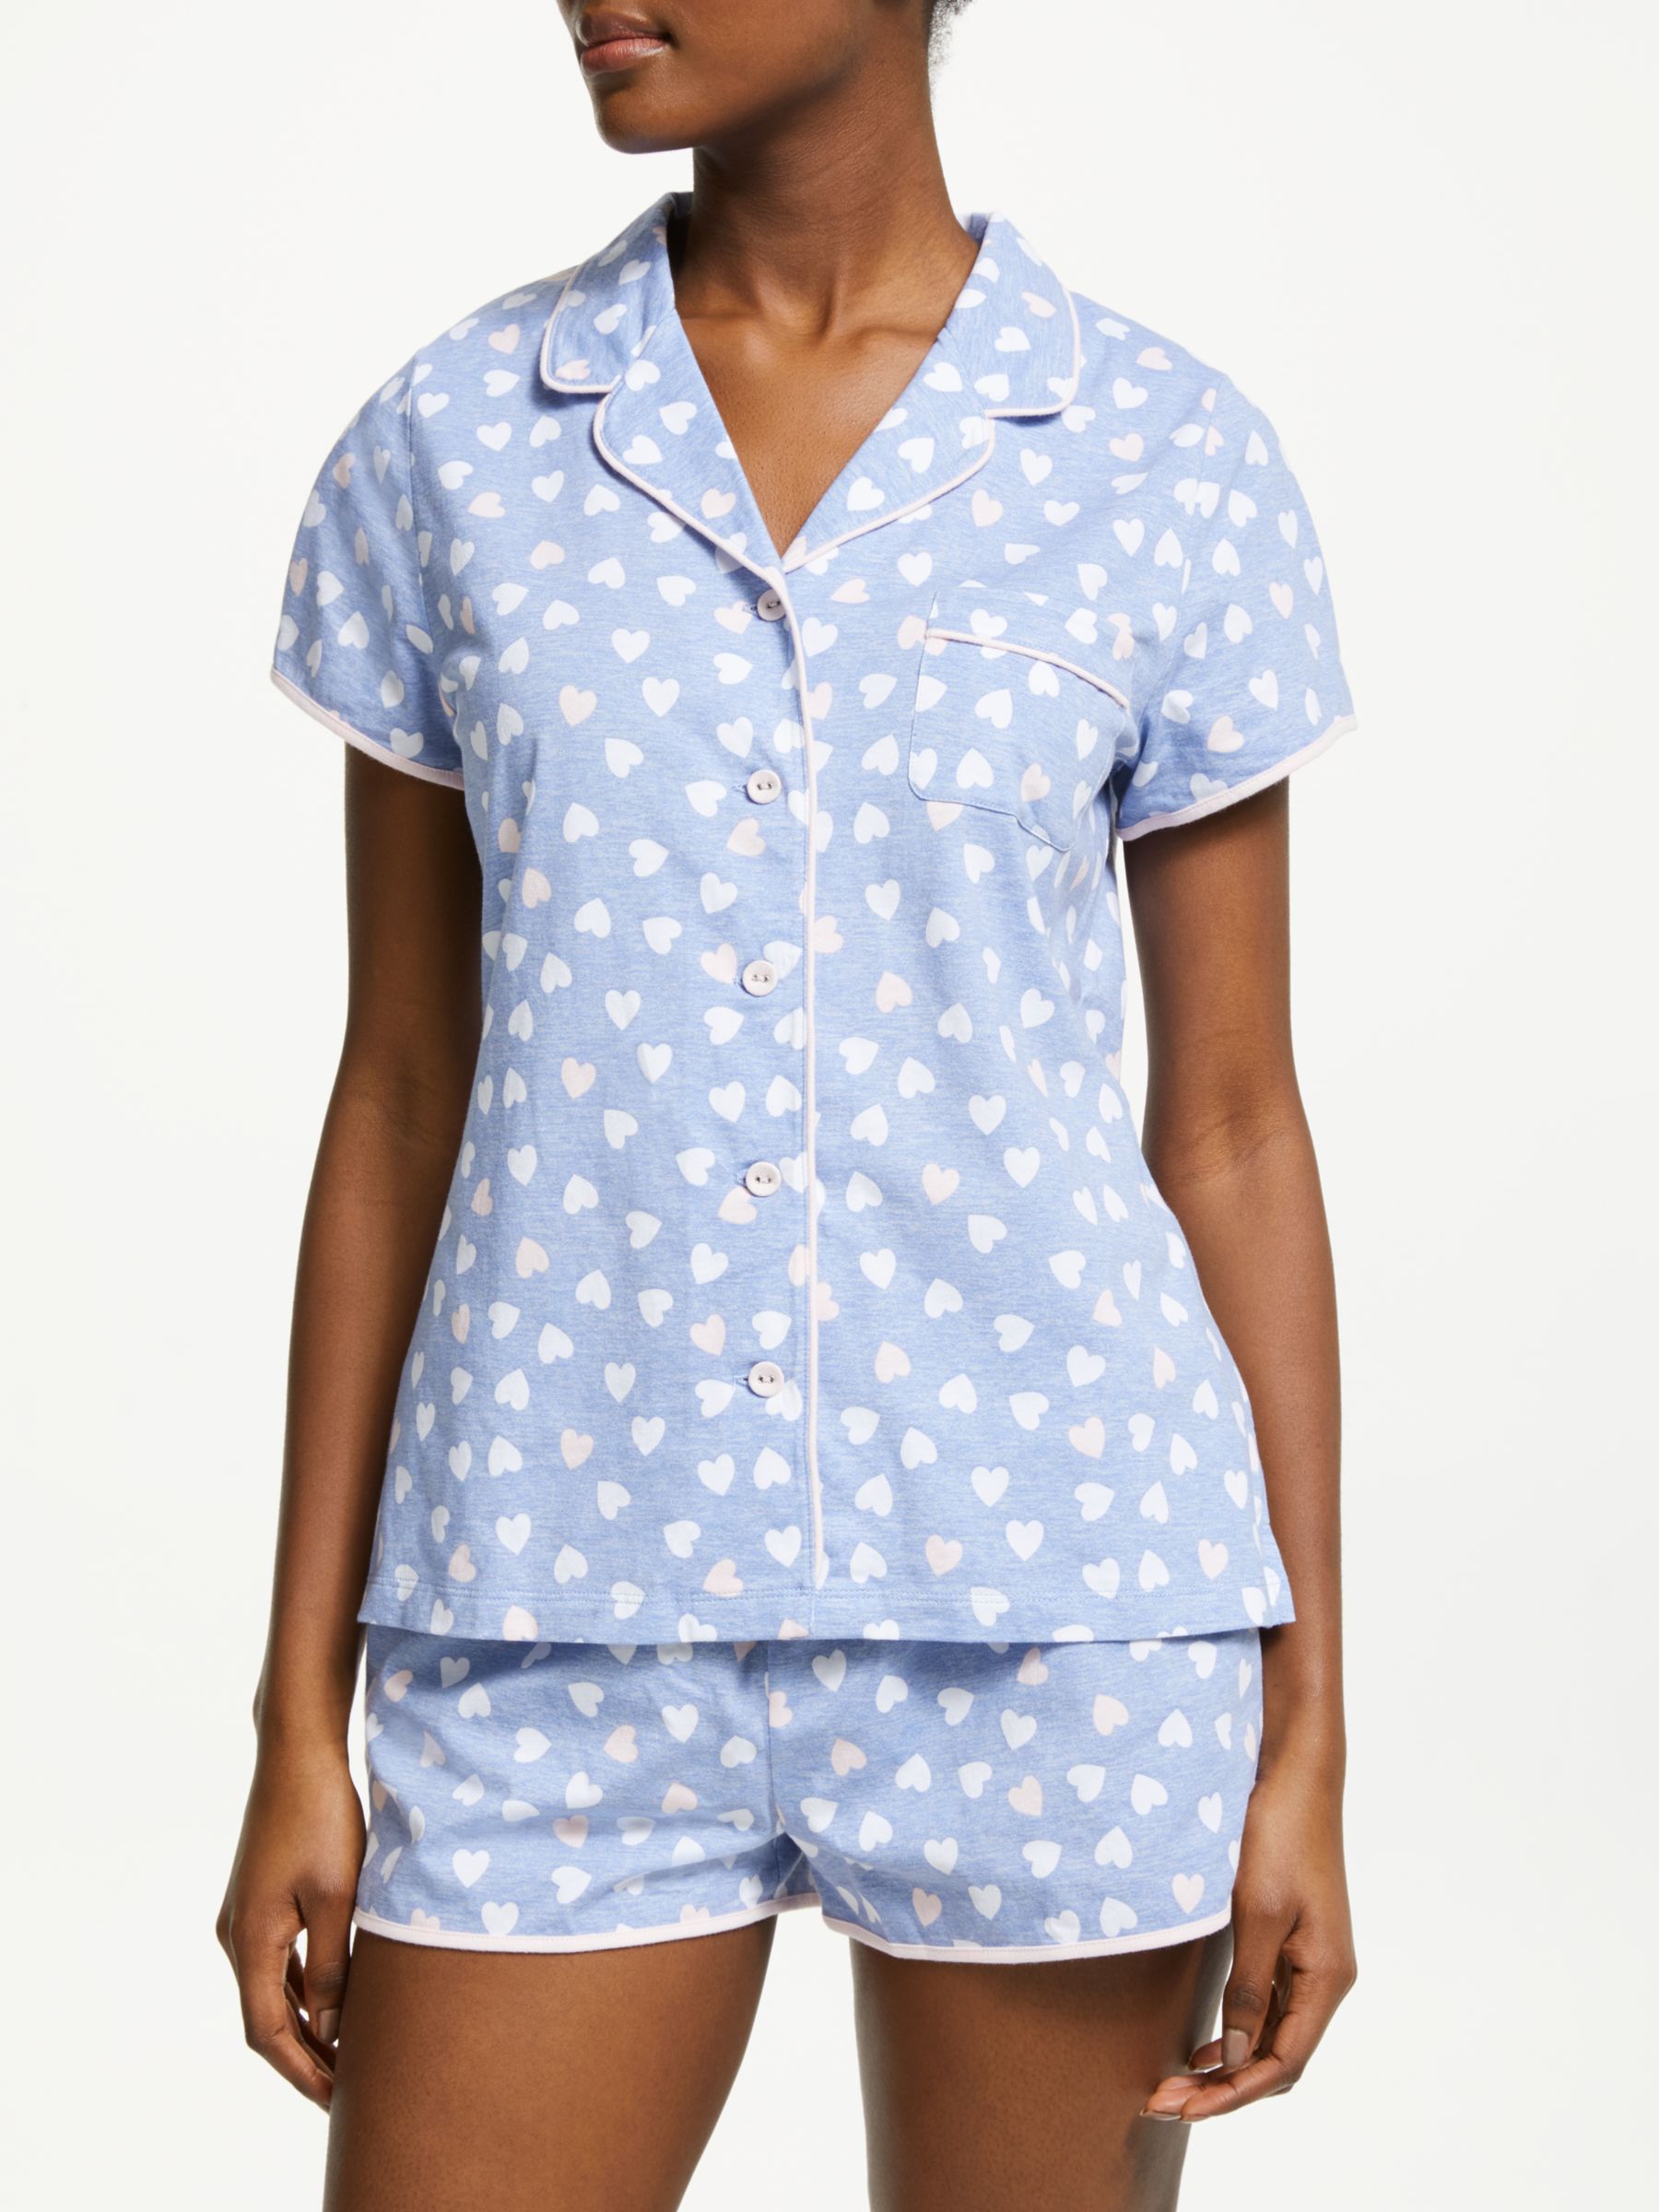 Pyjama Sets | Women's Nightwear | John Lewis & Partners